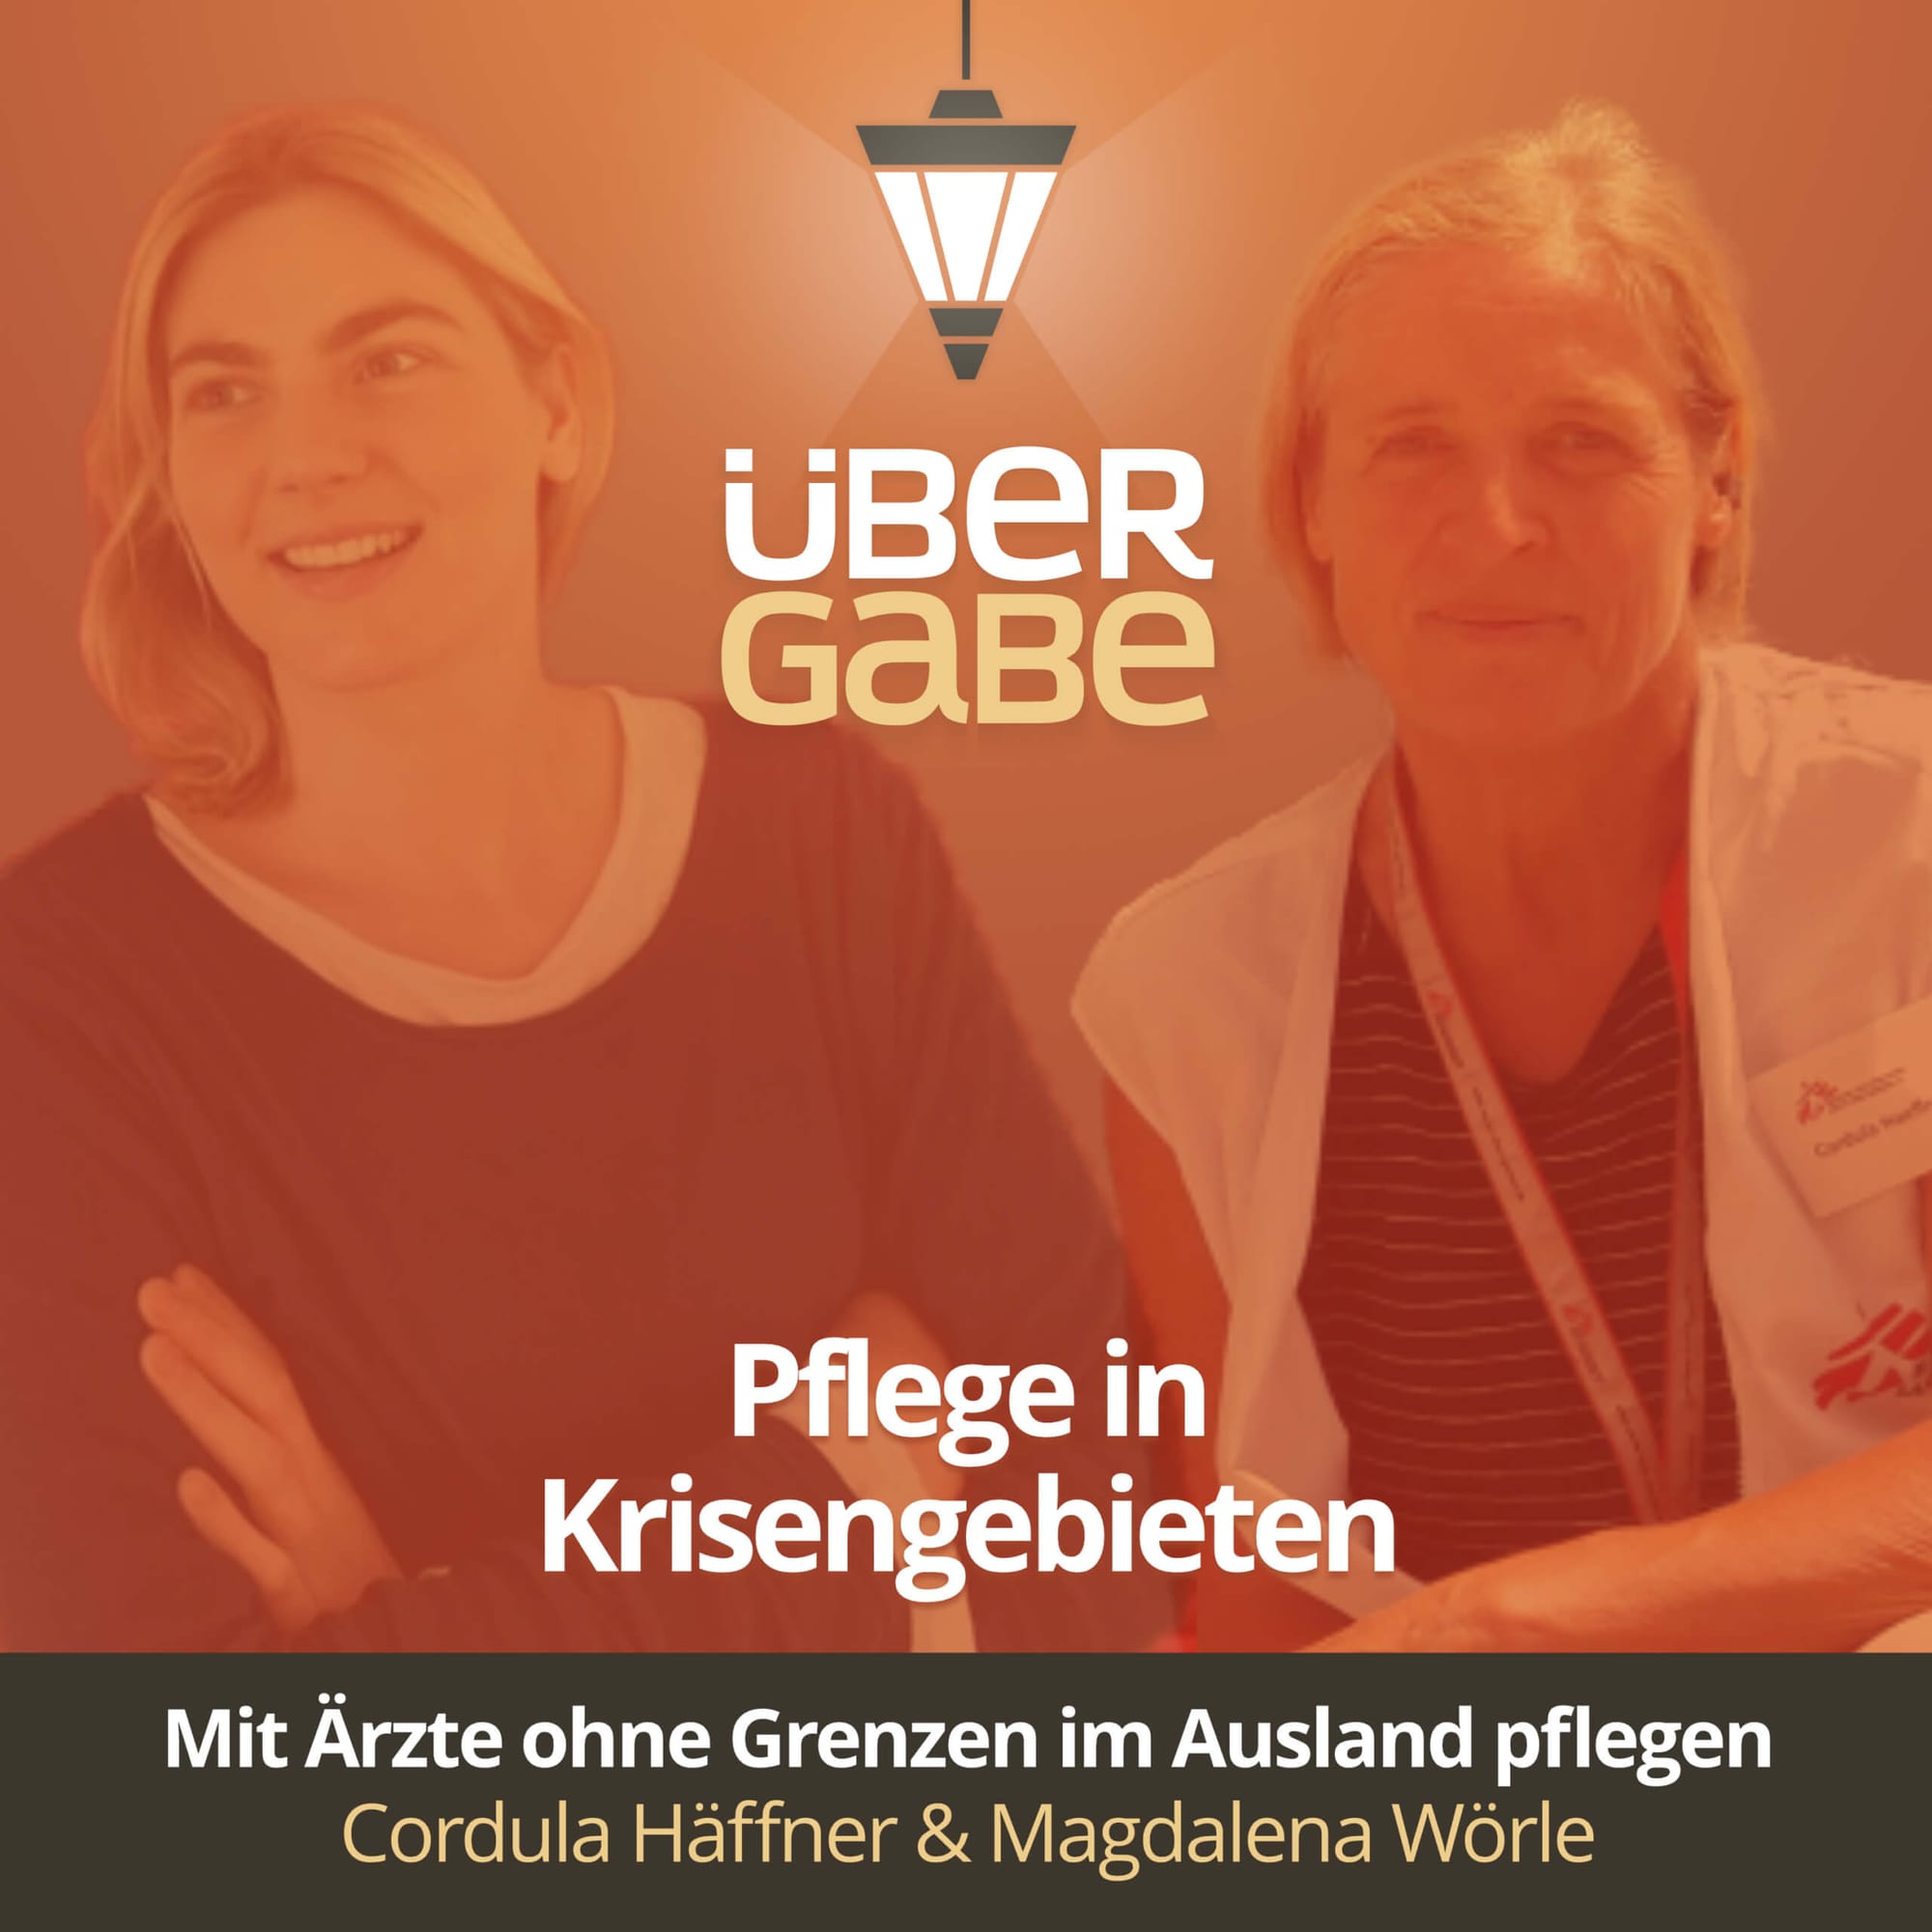 Pflege in Krisengebieten (Cordula Häffner & Magdalena Wörle)